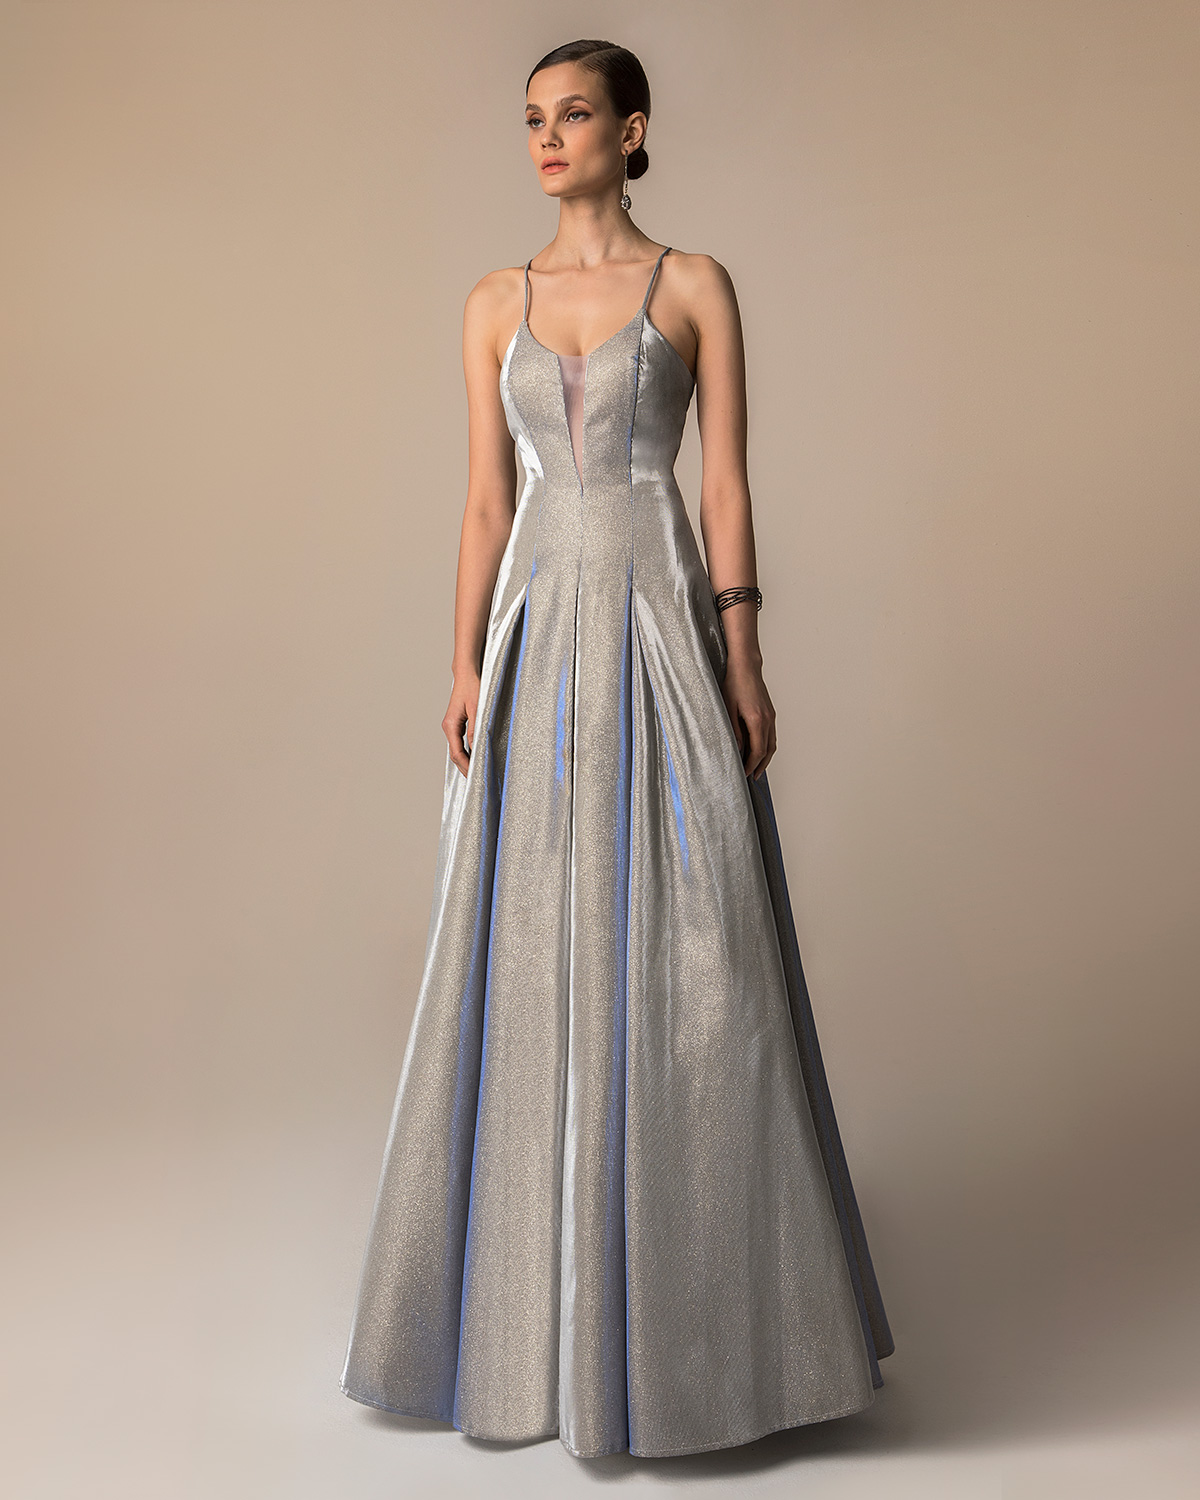 Βραδυνά Φορέματα / Βραδινό μακρύ φόρεμα από γυαλιστερό ύφασμα με χιαστή τιράντες